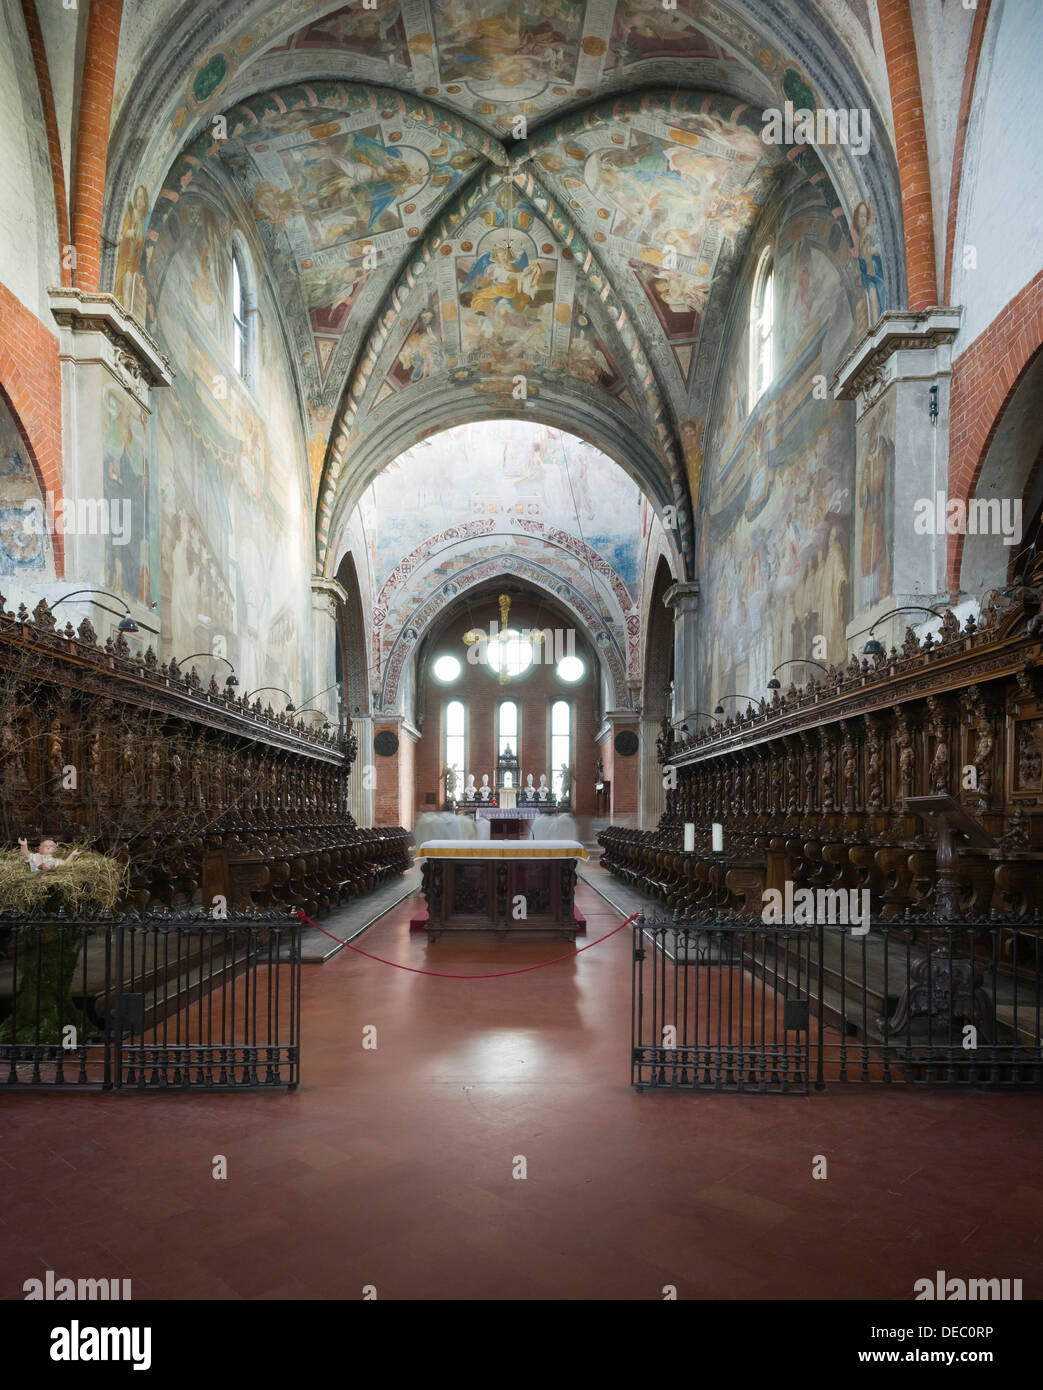 Coro e Coro del gotico Abbazia di Chiaravalle, Abbazia di Chiaravalle Milanese, Rogoredo, Milano, Lombardia, Italia Foto Stock